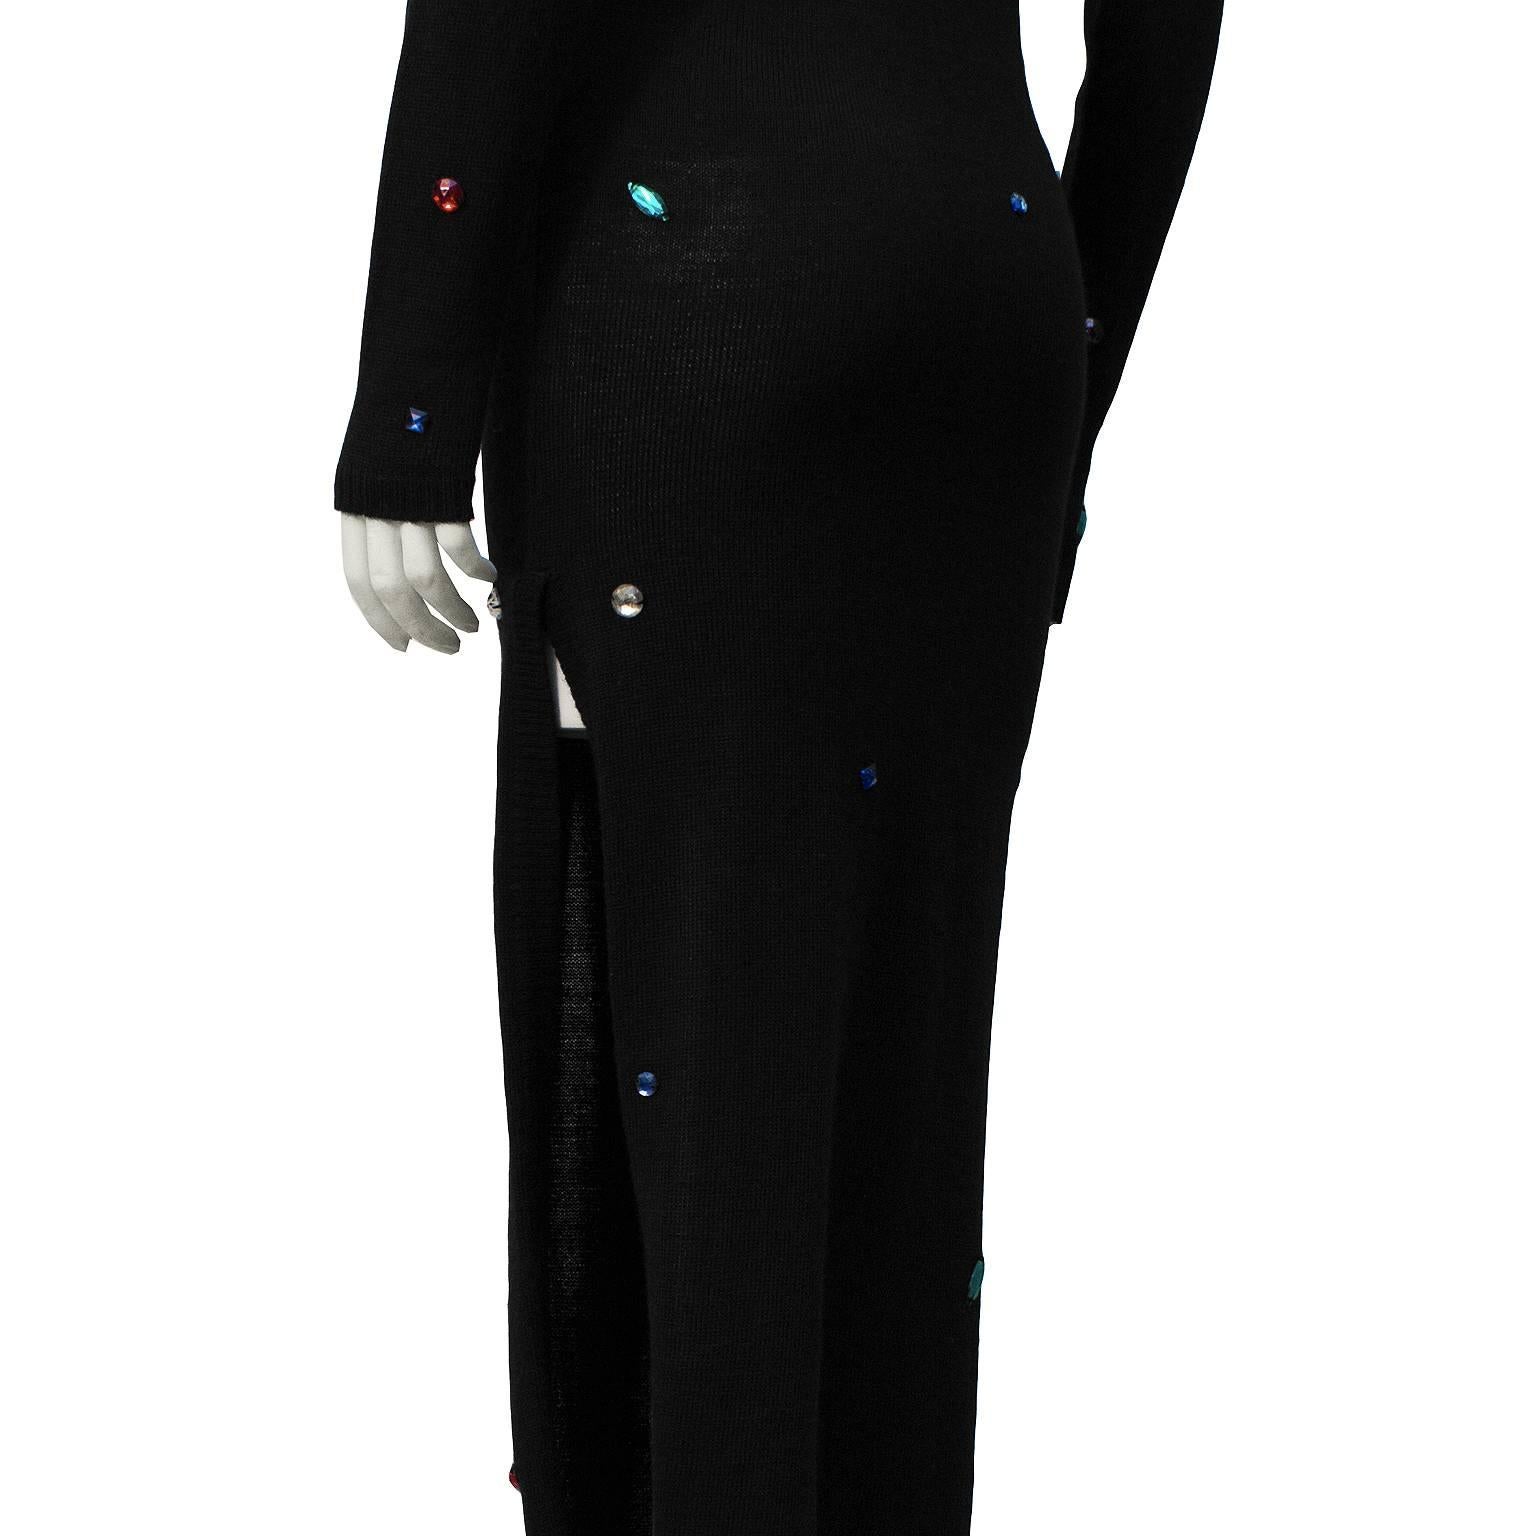 1980's Chantal Thomass Black Knit Cutout Dress with Colorful Jewels 1